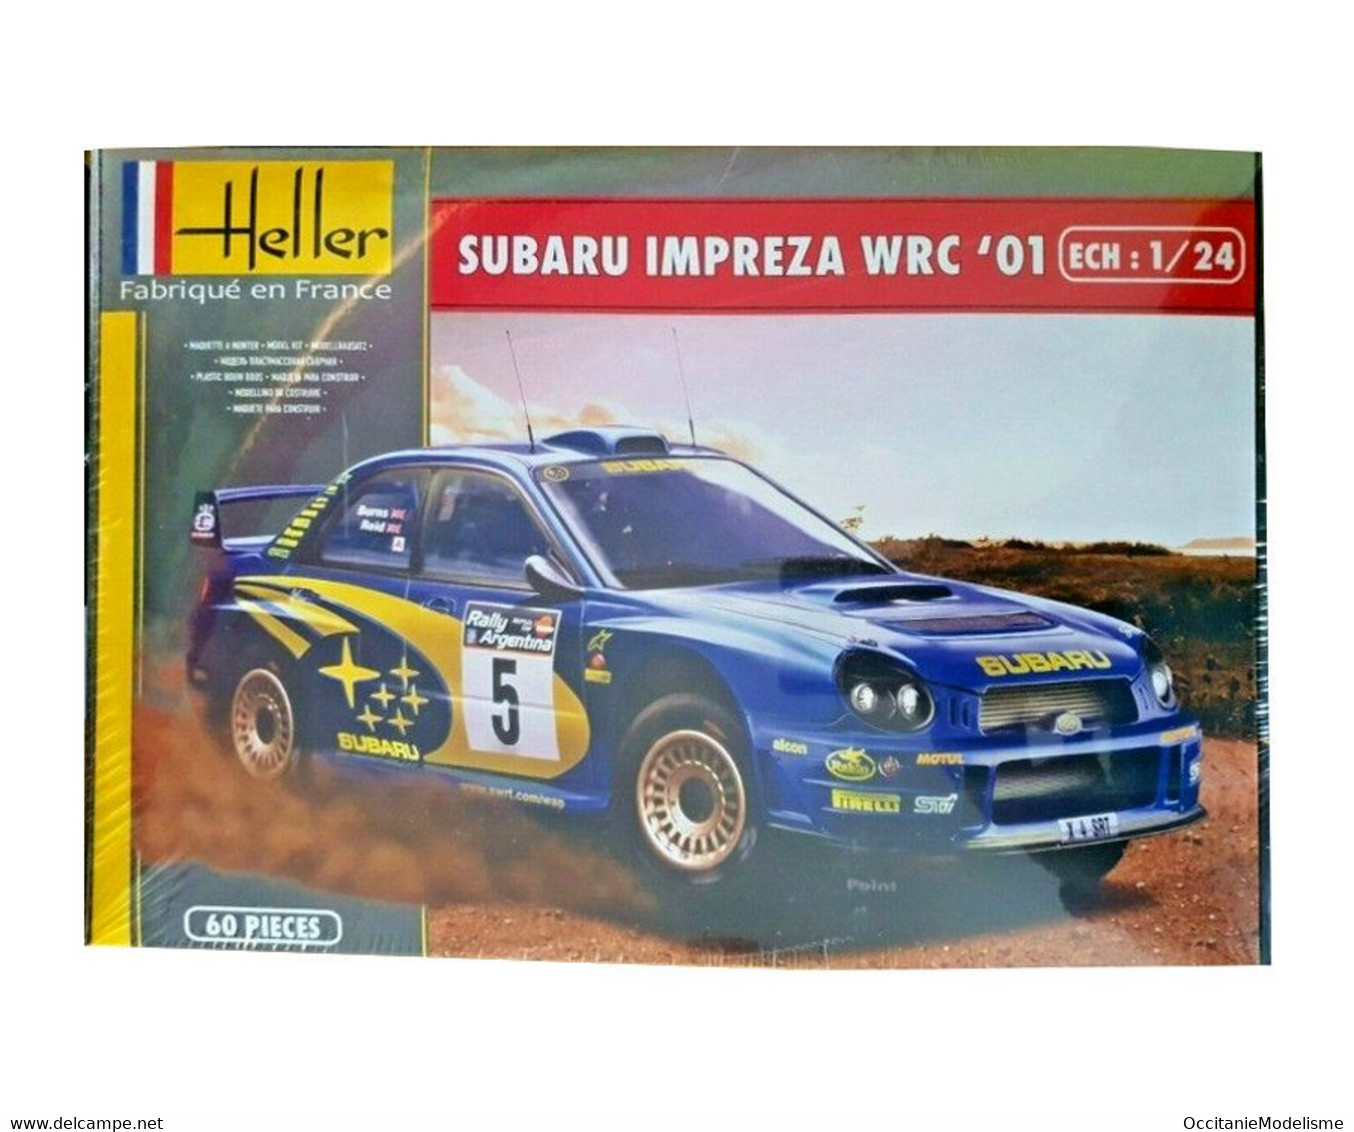 Heller - SUBARU IMPREZA WRC 2001 Maquette Kit Plastique Réf. 80761 NBO Neuf 1/24 - Voitures